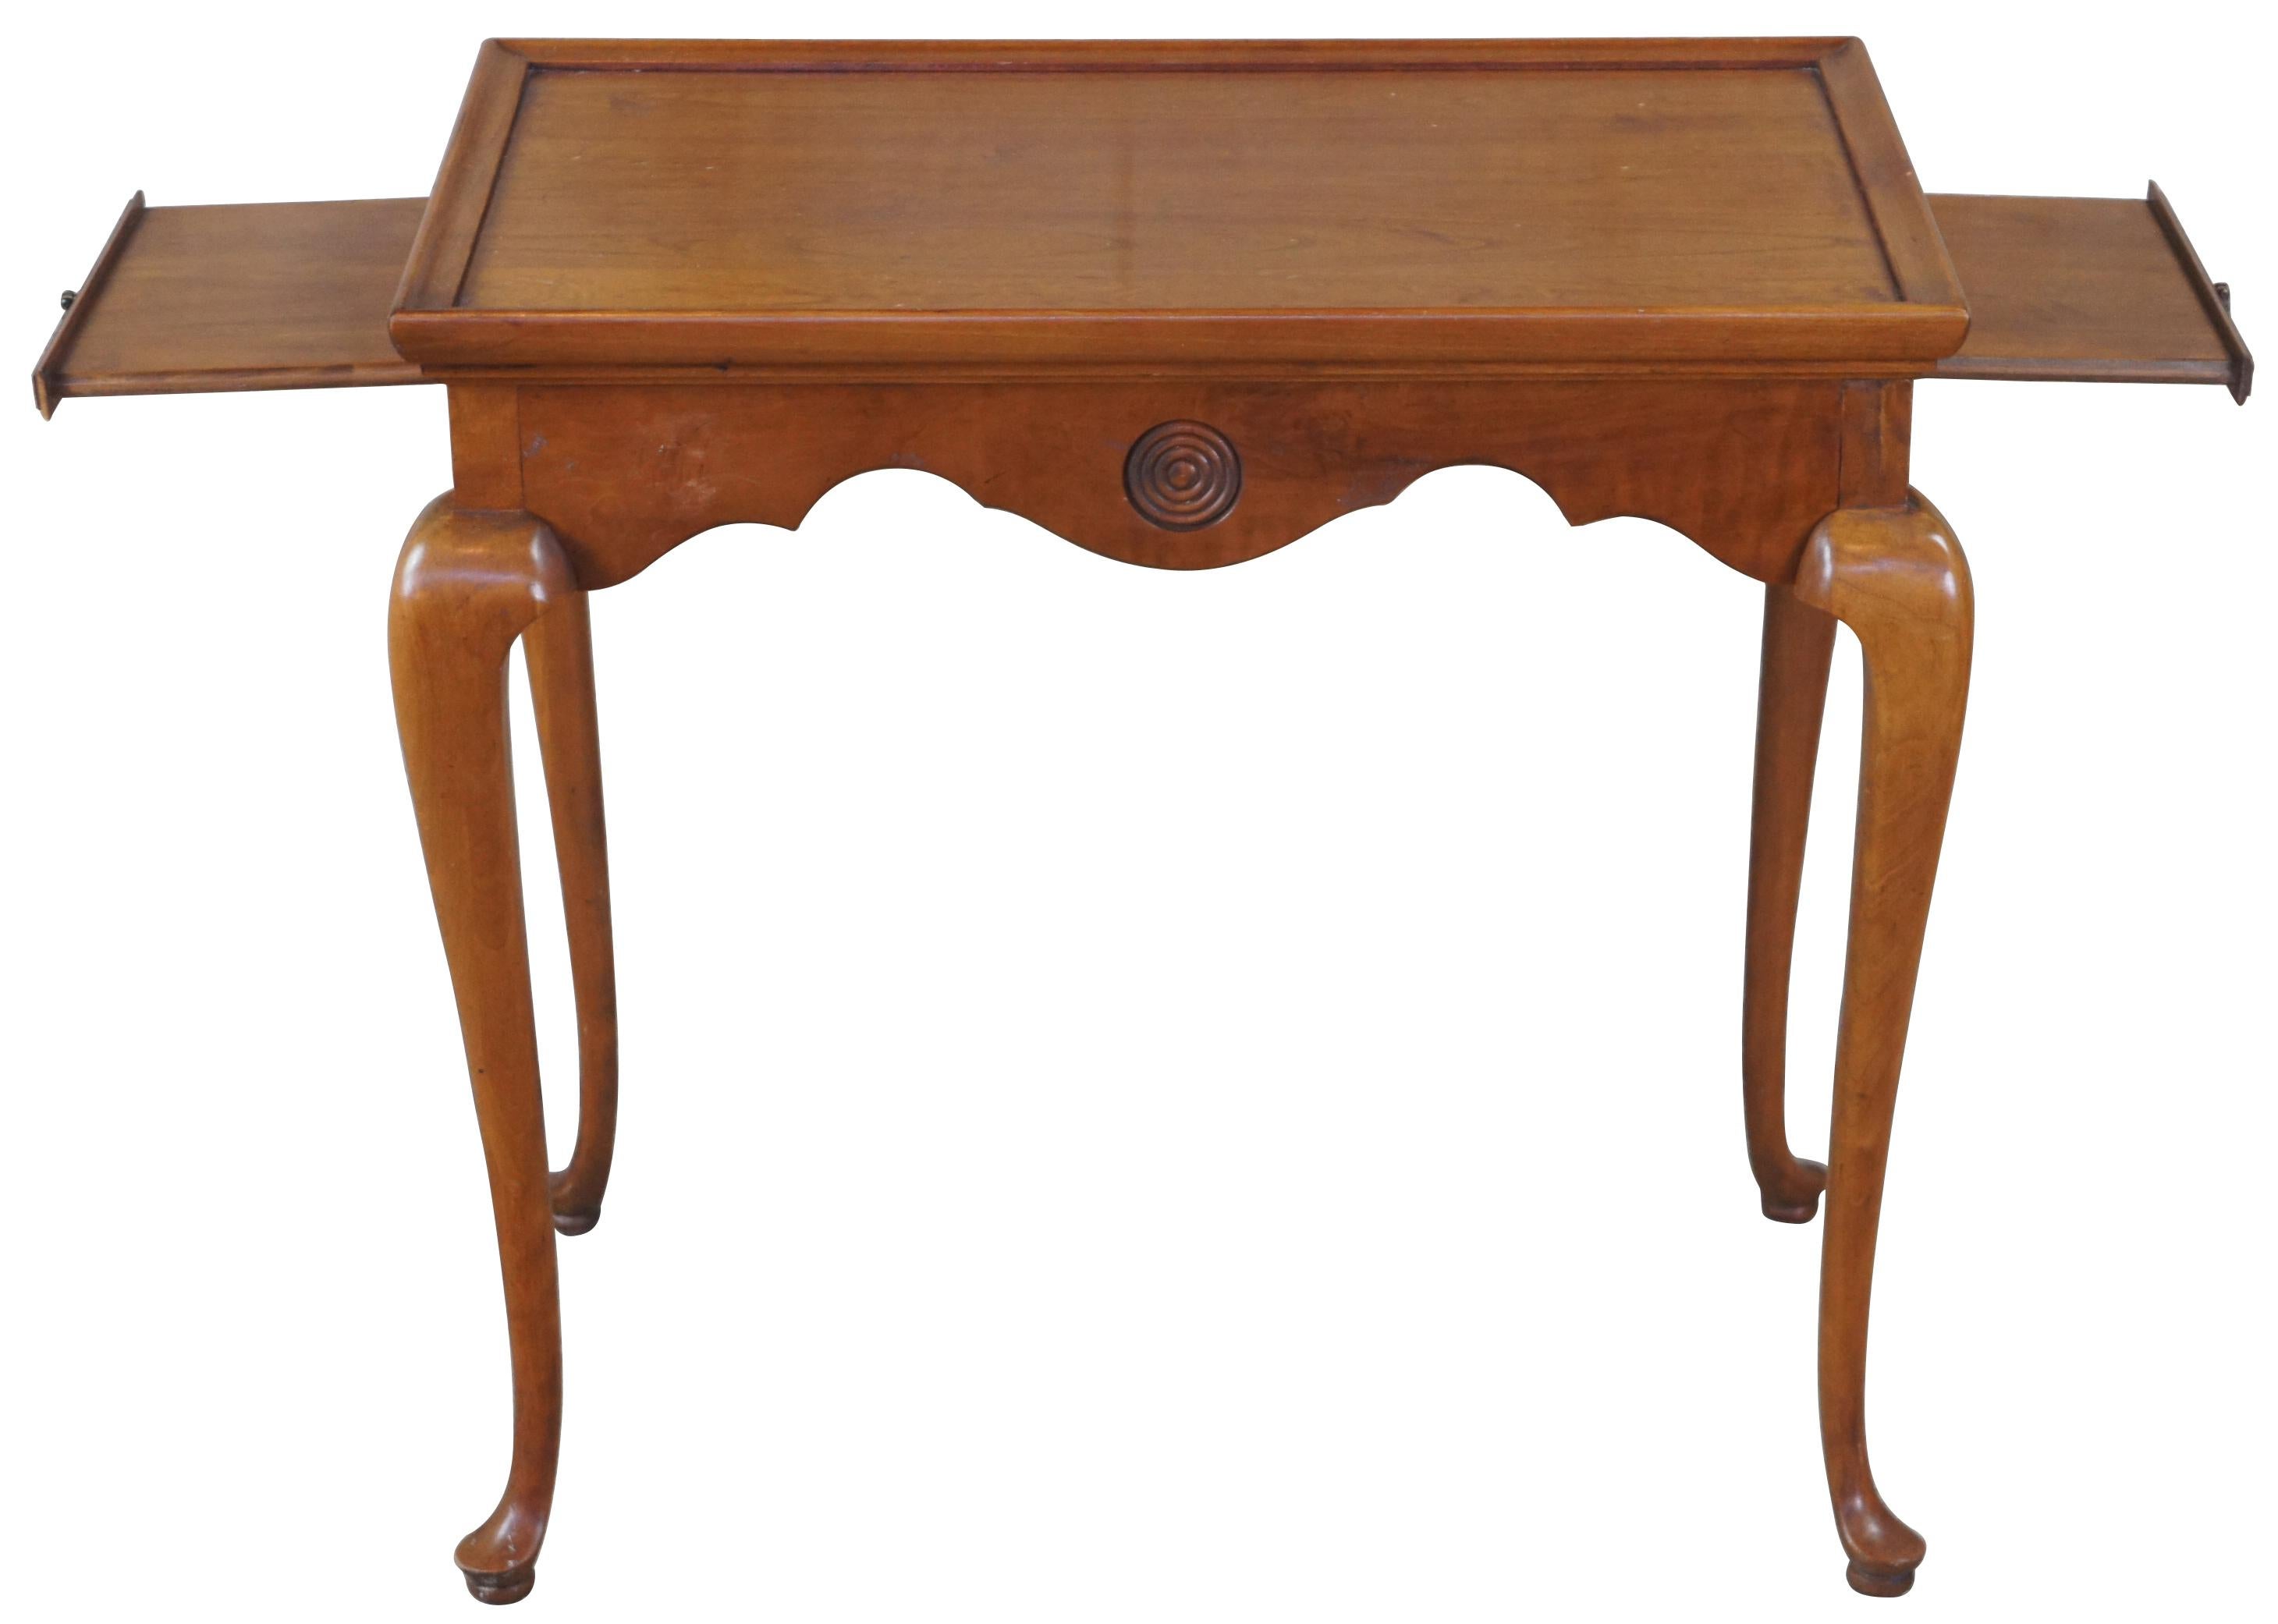 1967 Thomasville Tablett-Tisch. T-29-6375-17. Hergestellt aus massiver Kirsche im Queen-Anne-Stil. Rechteckige Form mit rechteckigem Einsatz über einer schlangenförmigen Schürze mit ausziehbaren Getränkeschalen. Der Tisch wird von langen